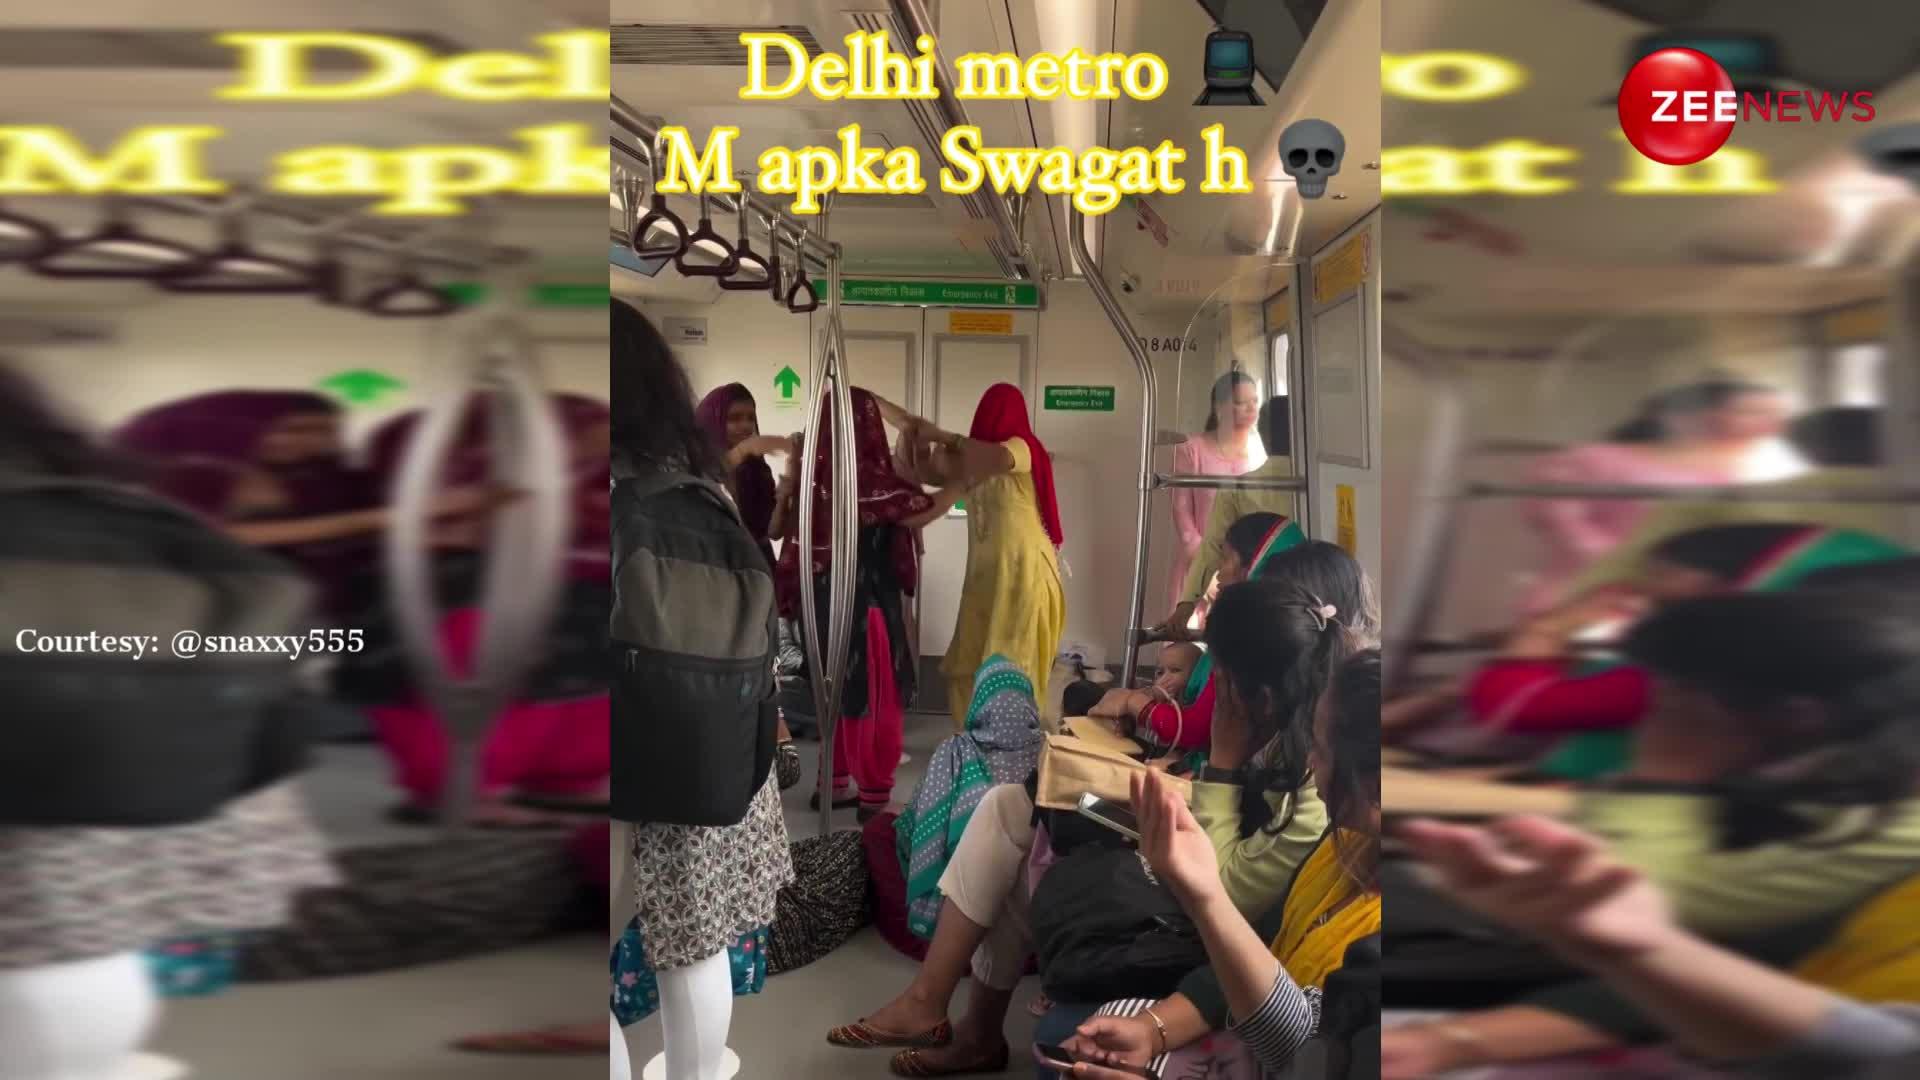 बस अब यही देखना बचा था, Delhi Metro में आंटियों ने किया कीर्तन सबके सामने लगाए जोरदार ठुमके-VIDEO